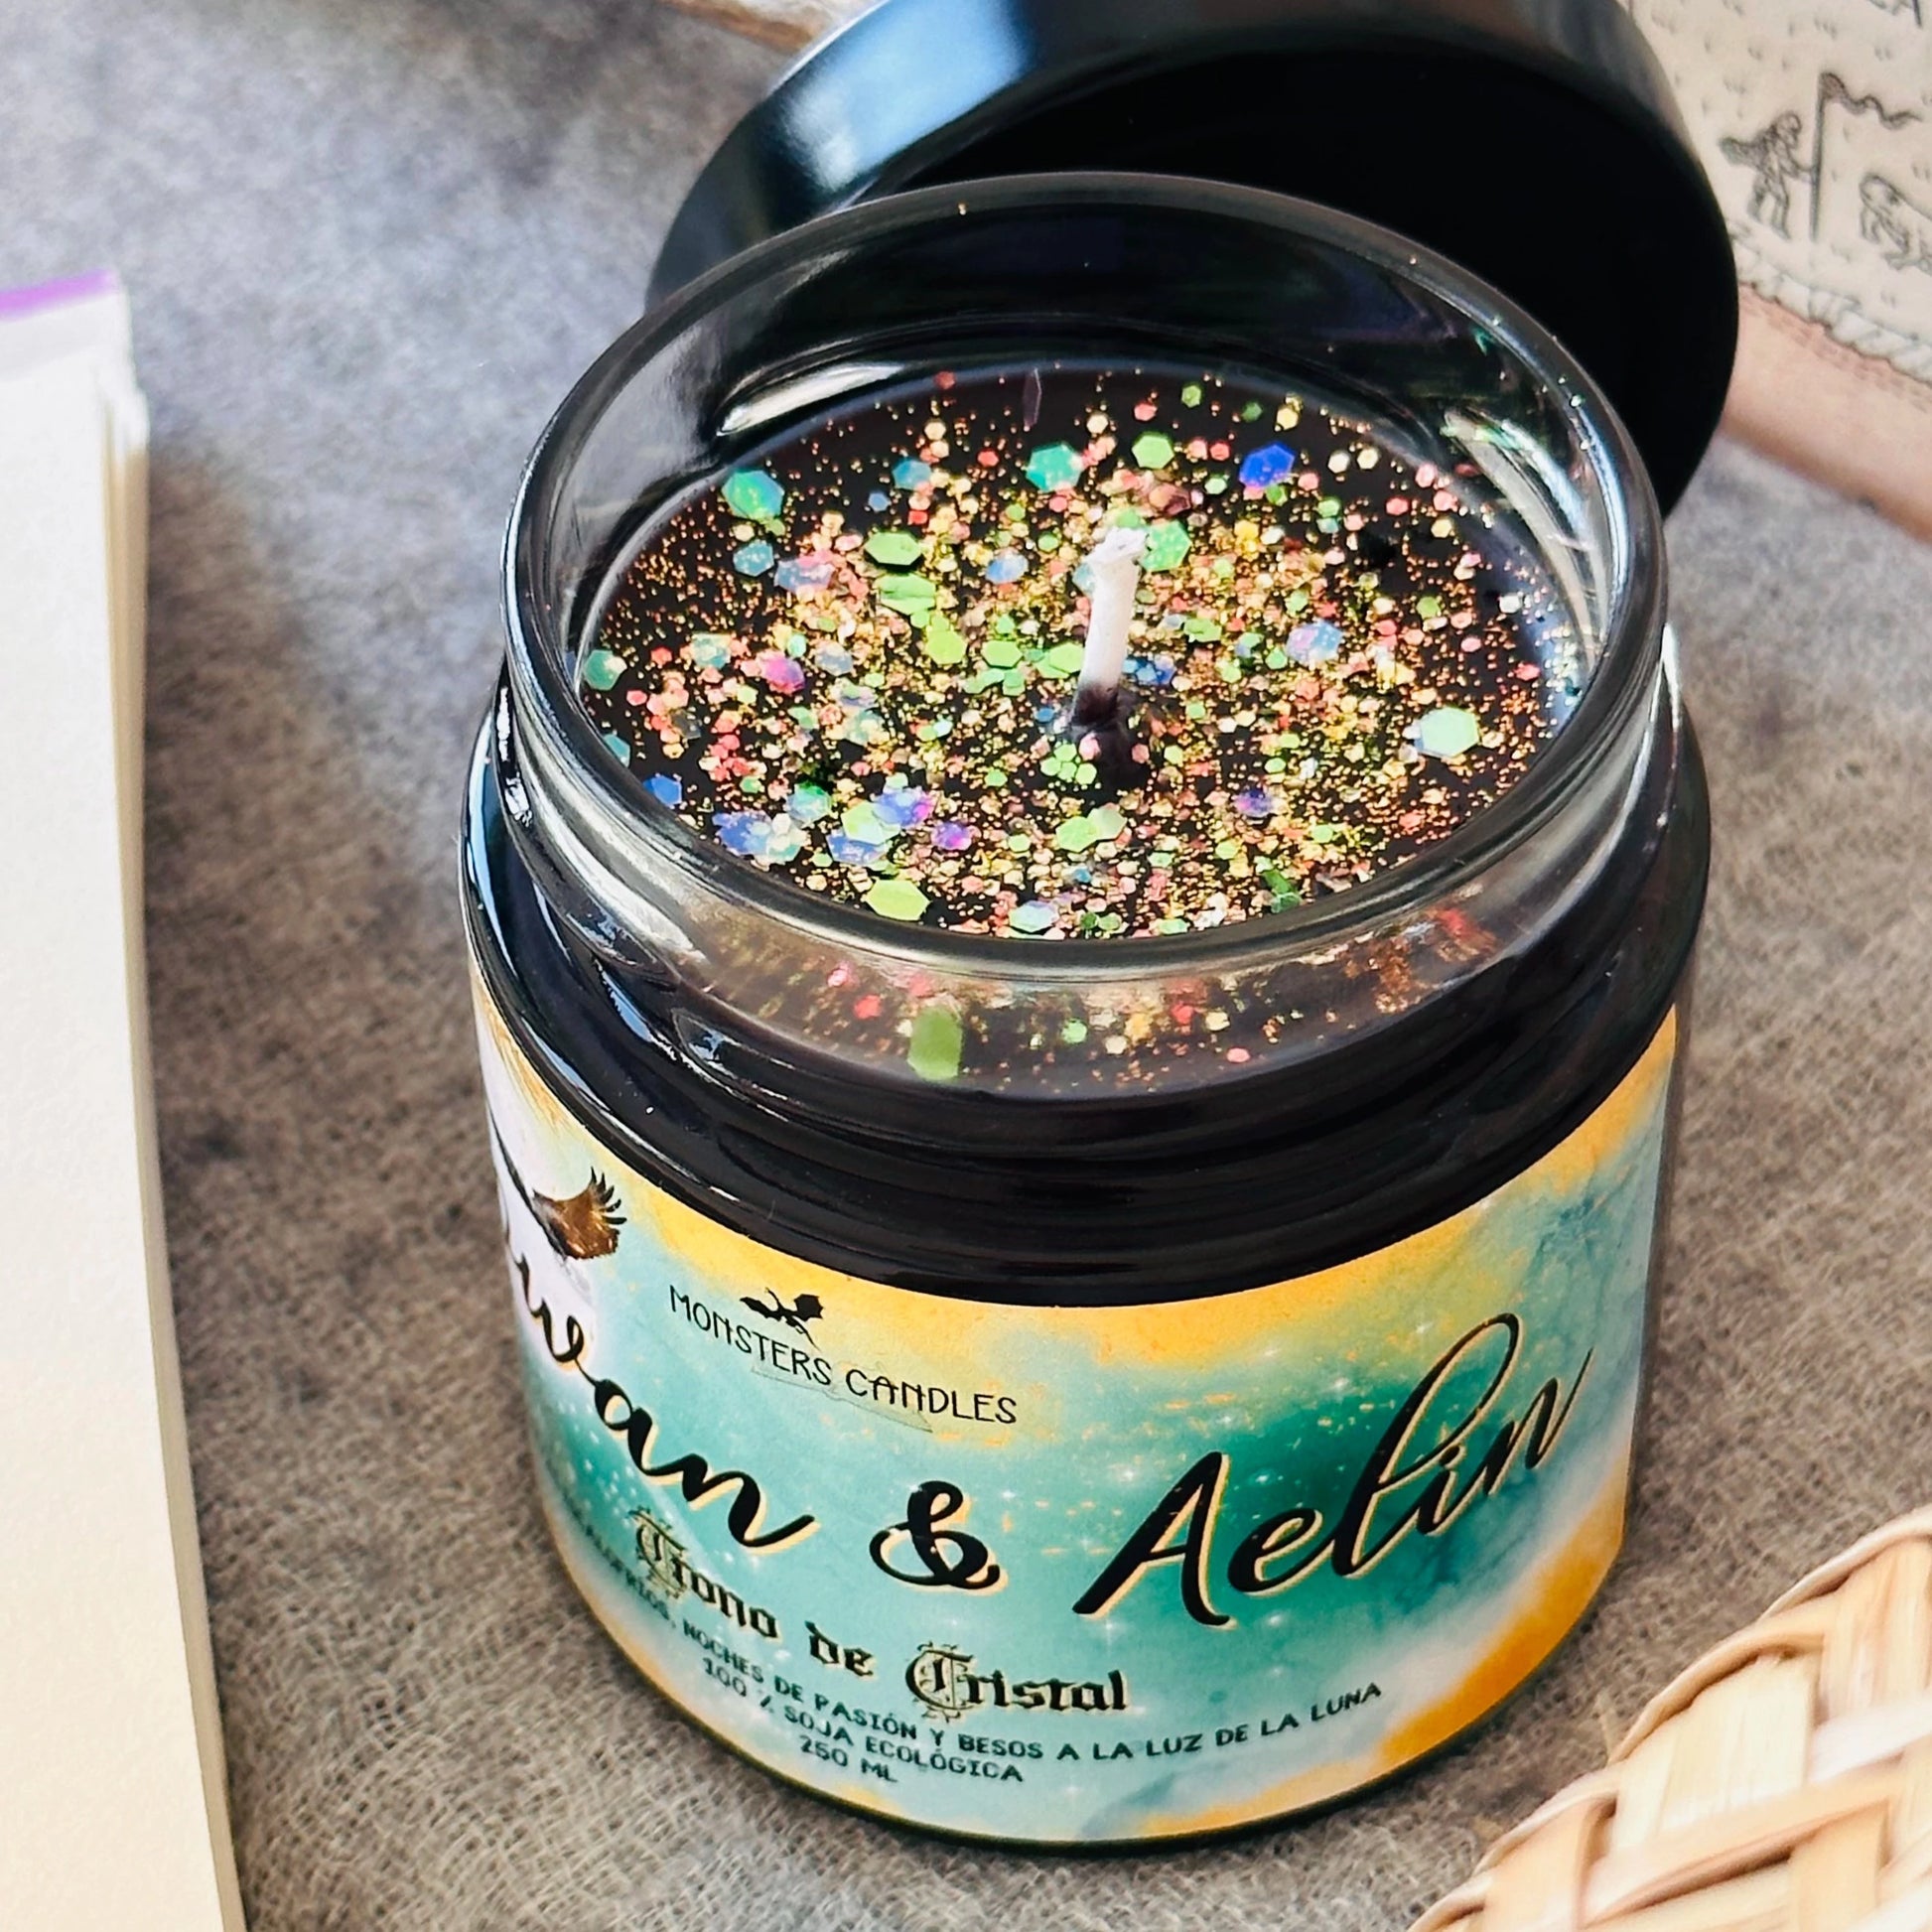 Vela “Rowan y Aelin” Trono de Cristal - Monsters Candles ® - Velas Literarias artesanas de soja 100% ecológica